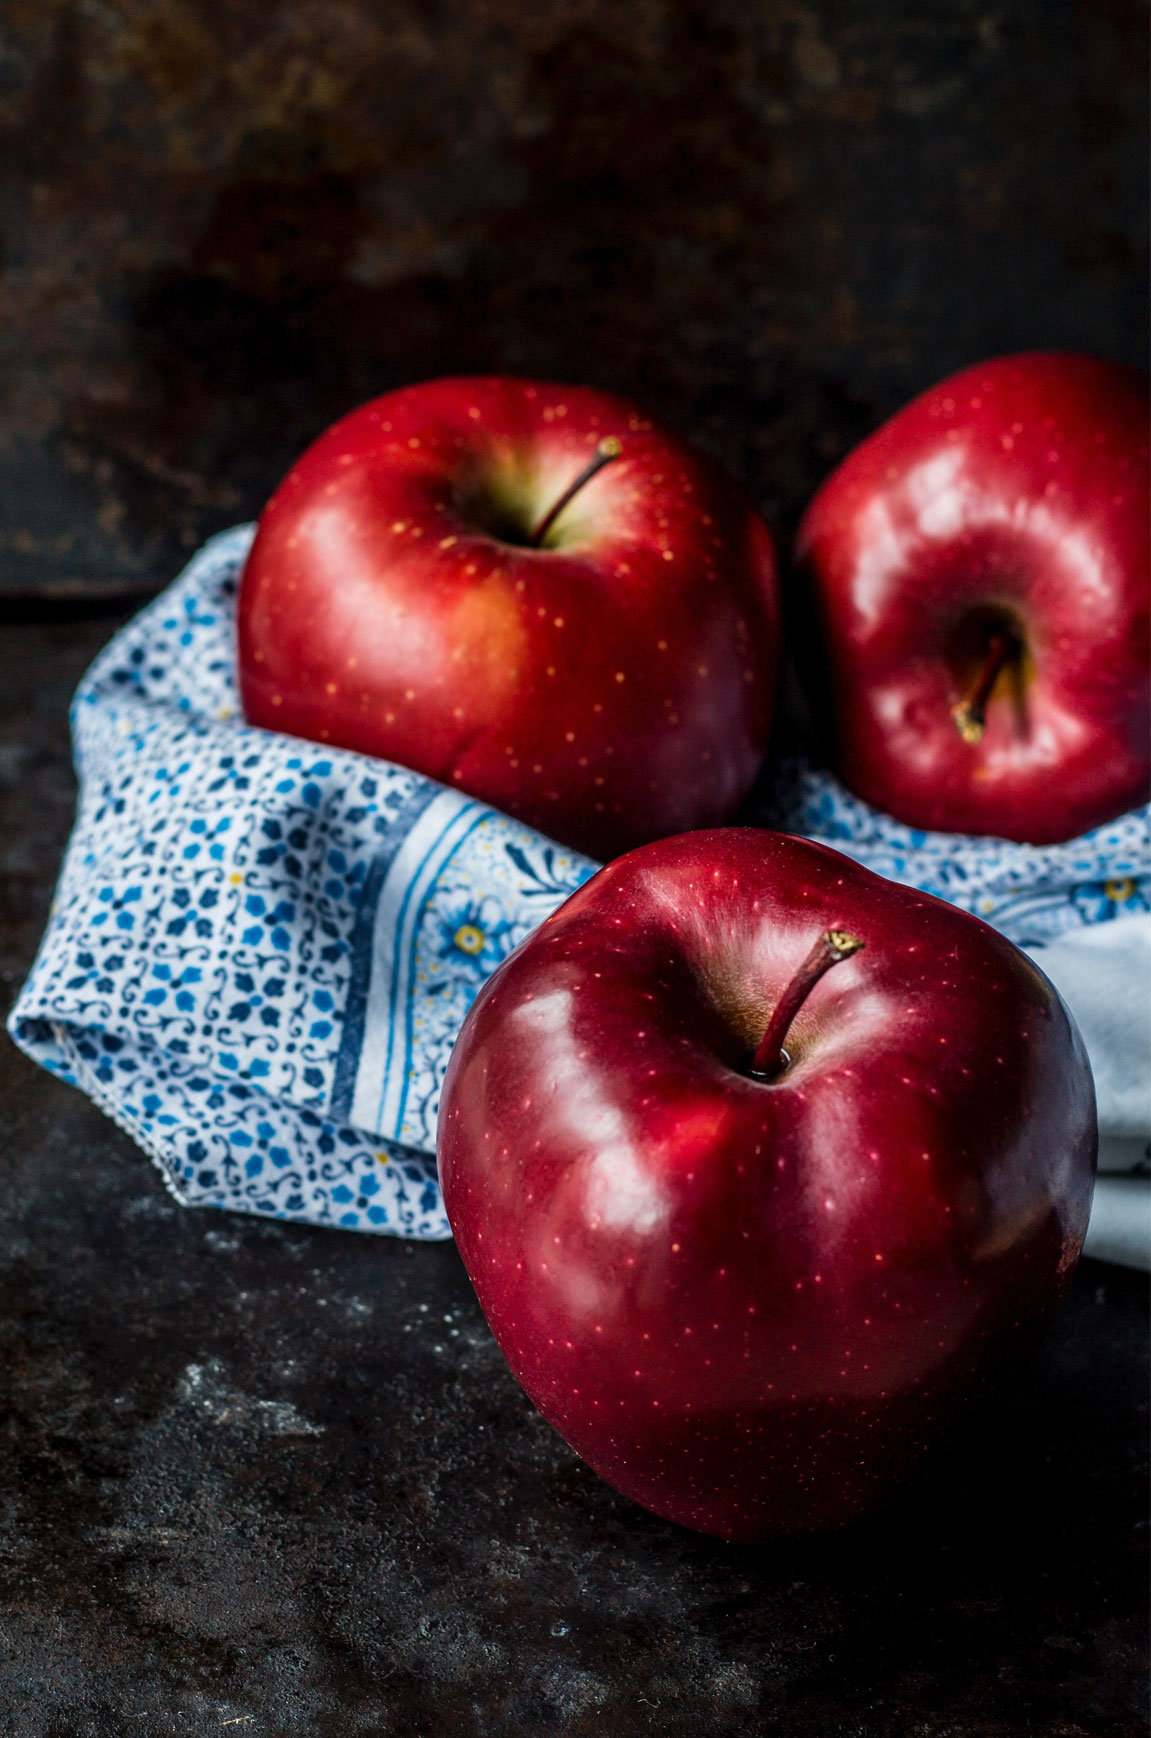 Jabuke su najpopularnije voće, osobito tijekom jeseni.